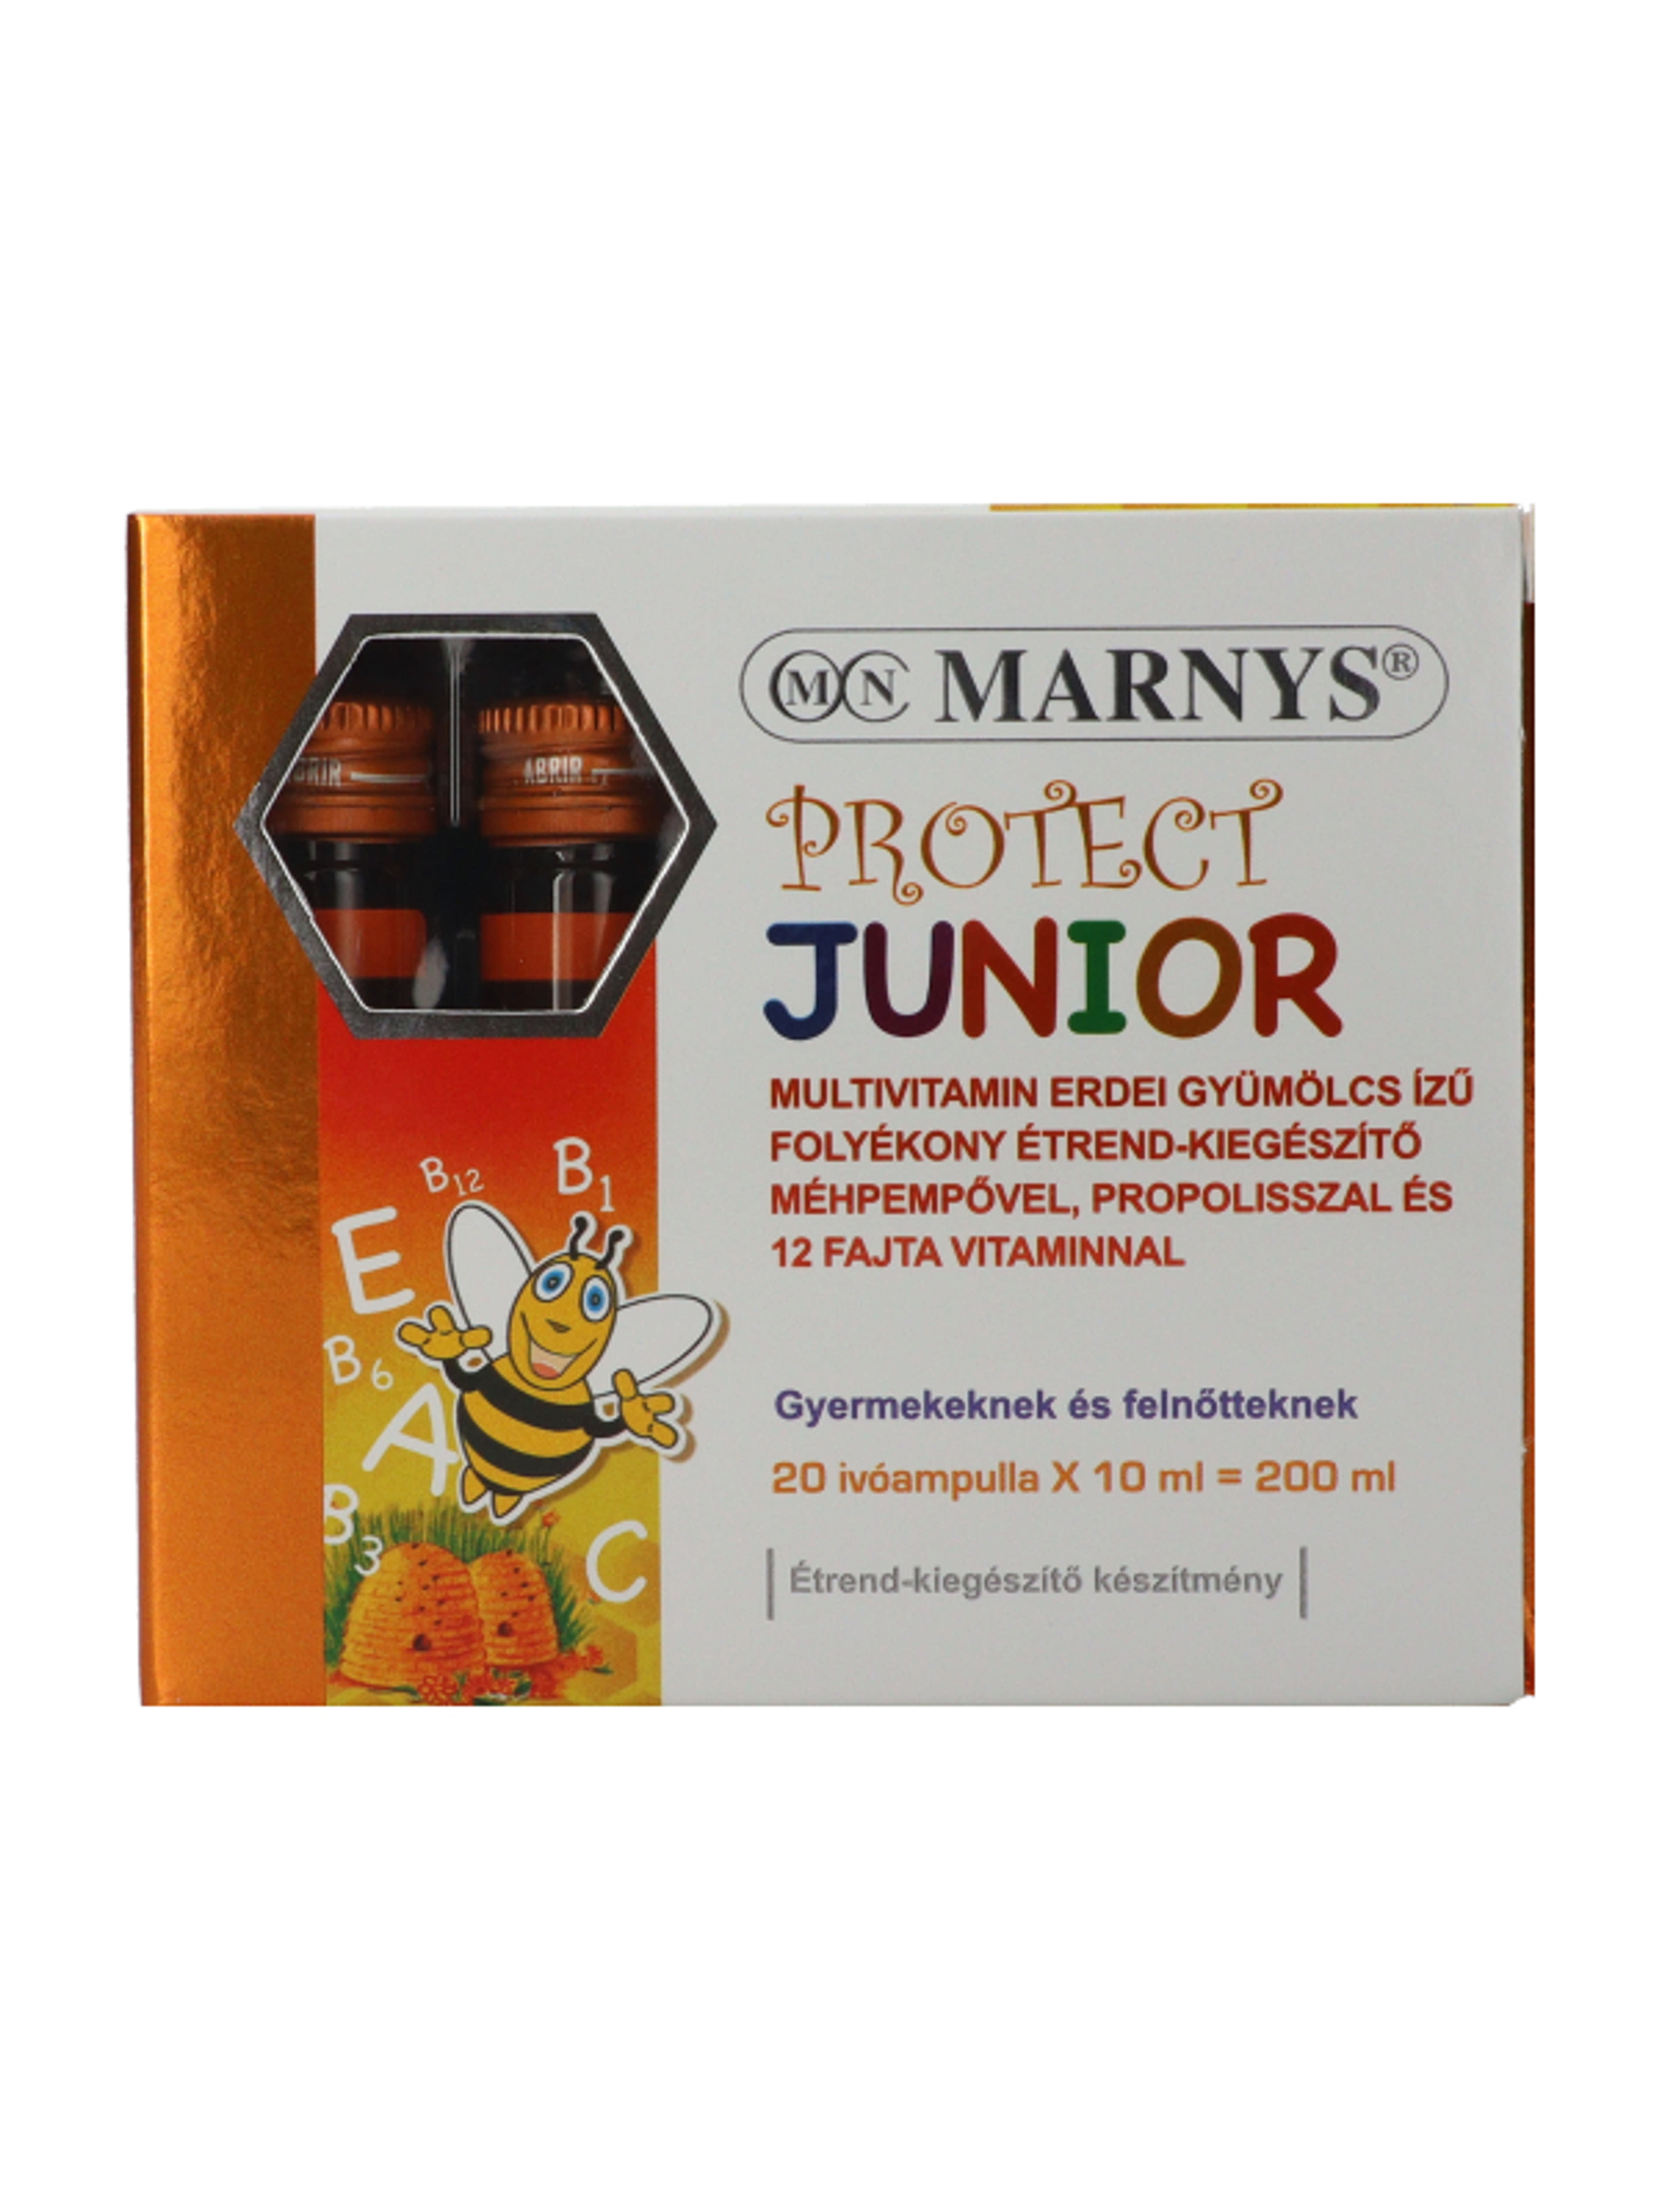 Marnys Protect Junior folyékony multivitamin méhpempővel és propolisszal ivóampullában (20 x 10 ml) - 200 ml